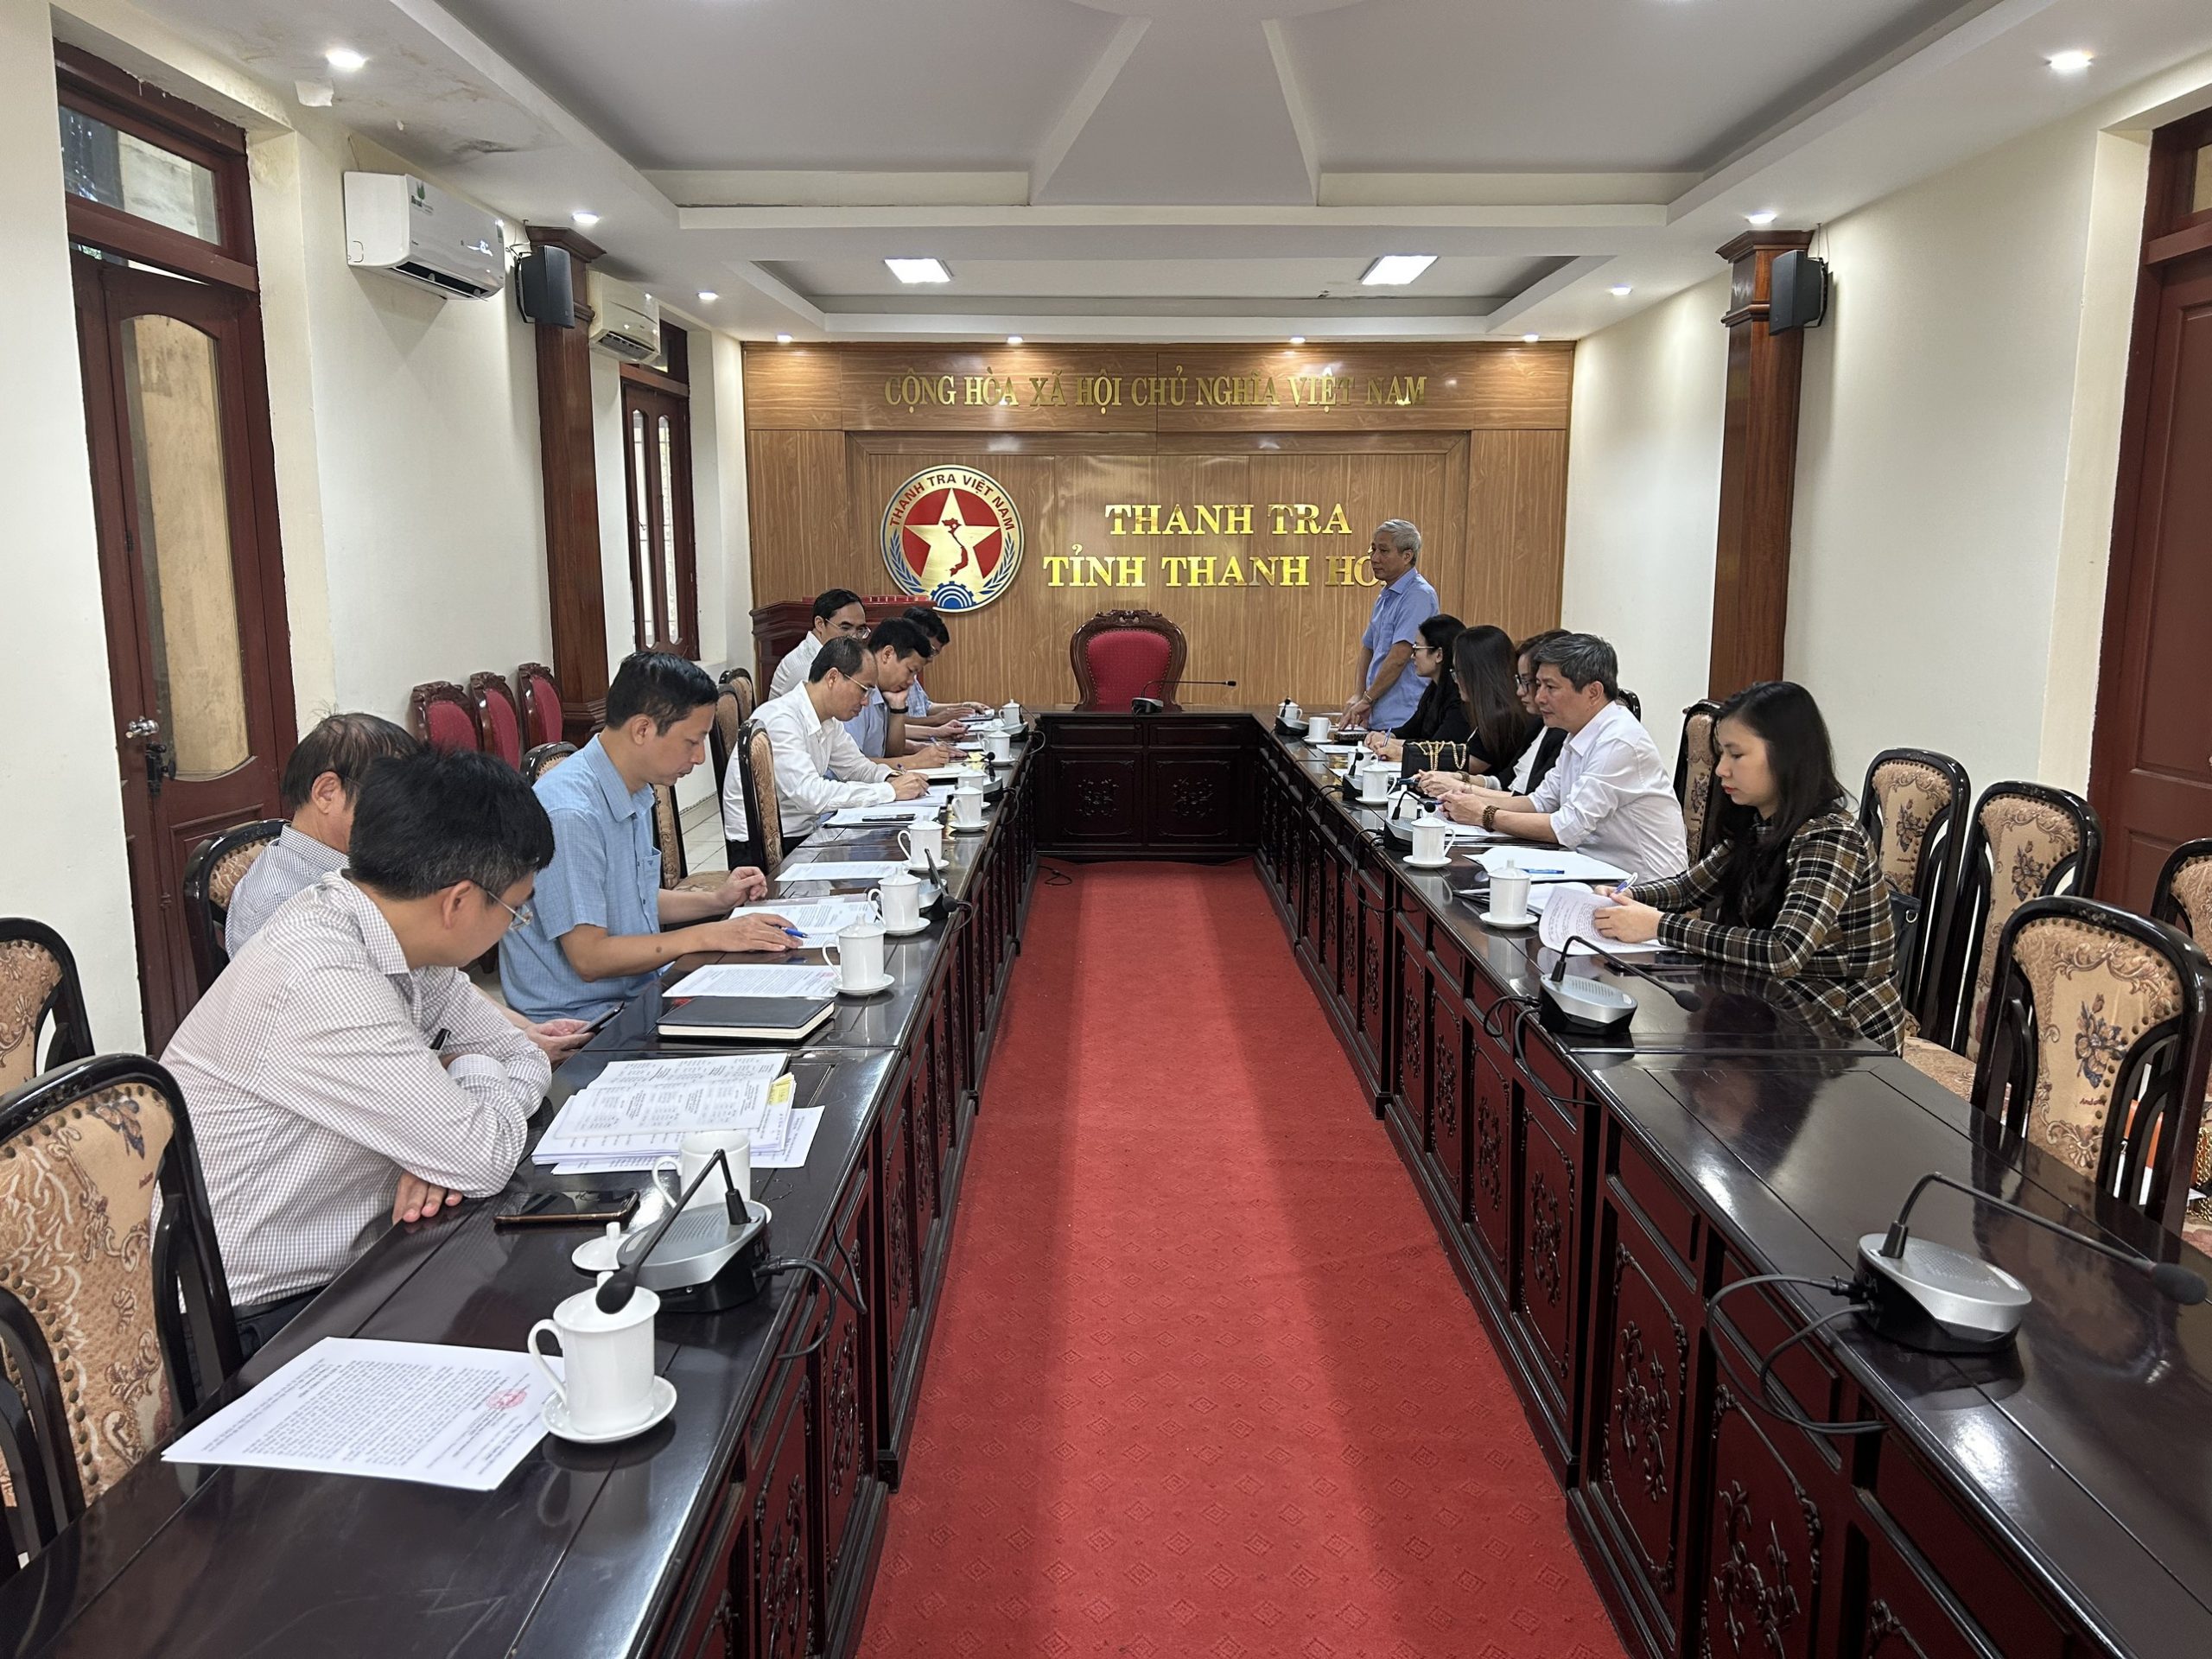 Khoa Nghiệp vụ Thanh tra tổ chức đi trao đổi kinh nghiệm thực tiễn về công tác thanh tra tại các cơ quan thanh tra trên địa bàn tỉnh Thanh Hóa